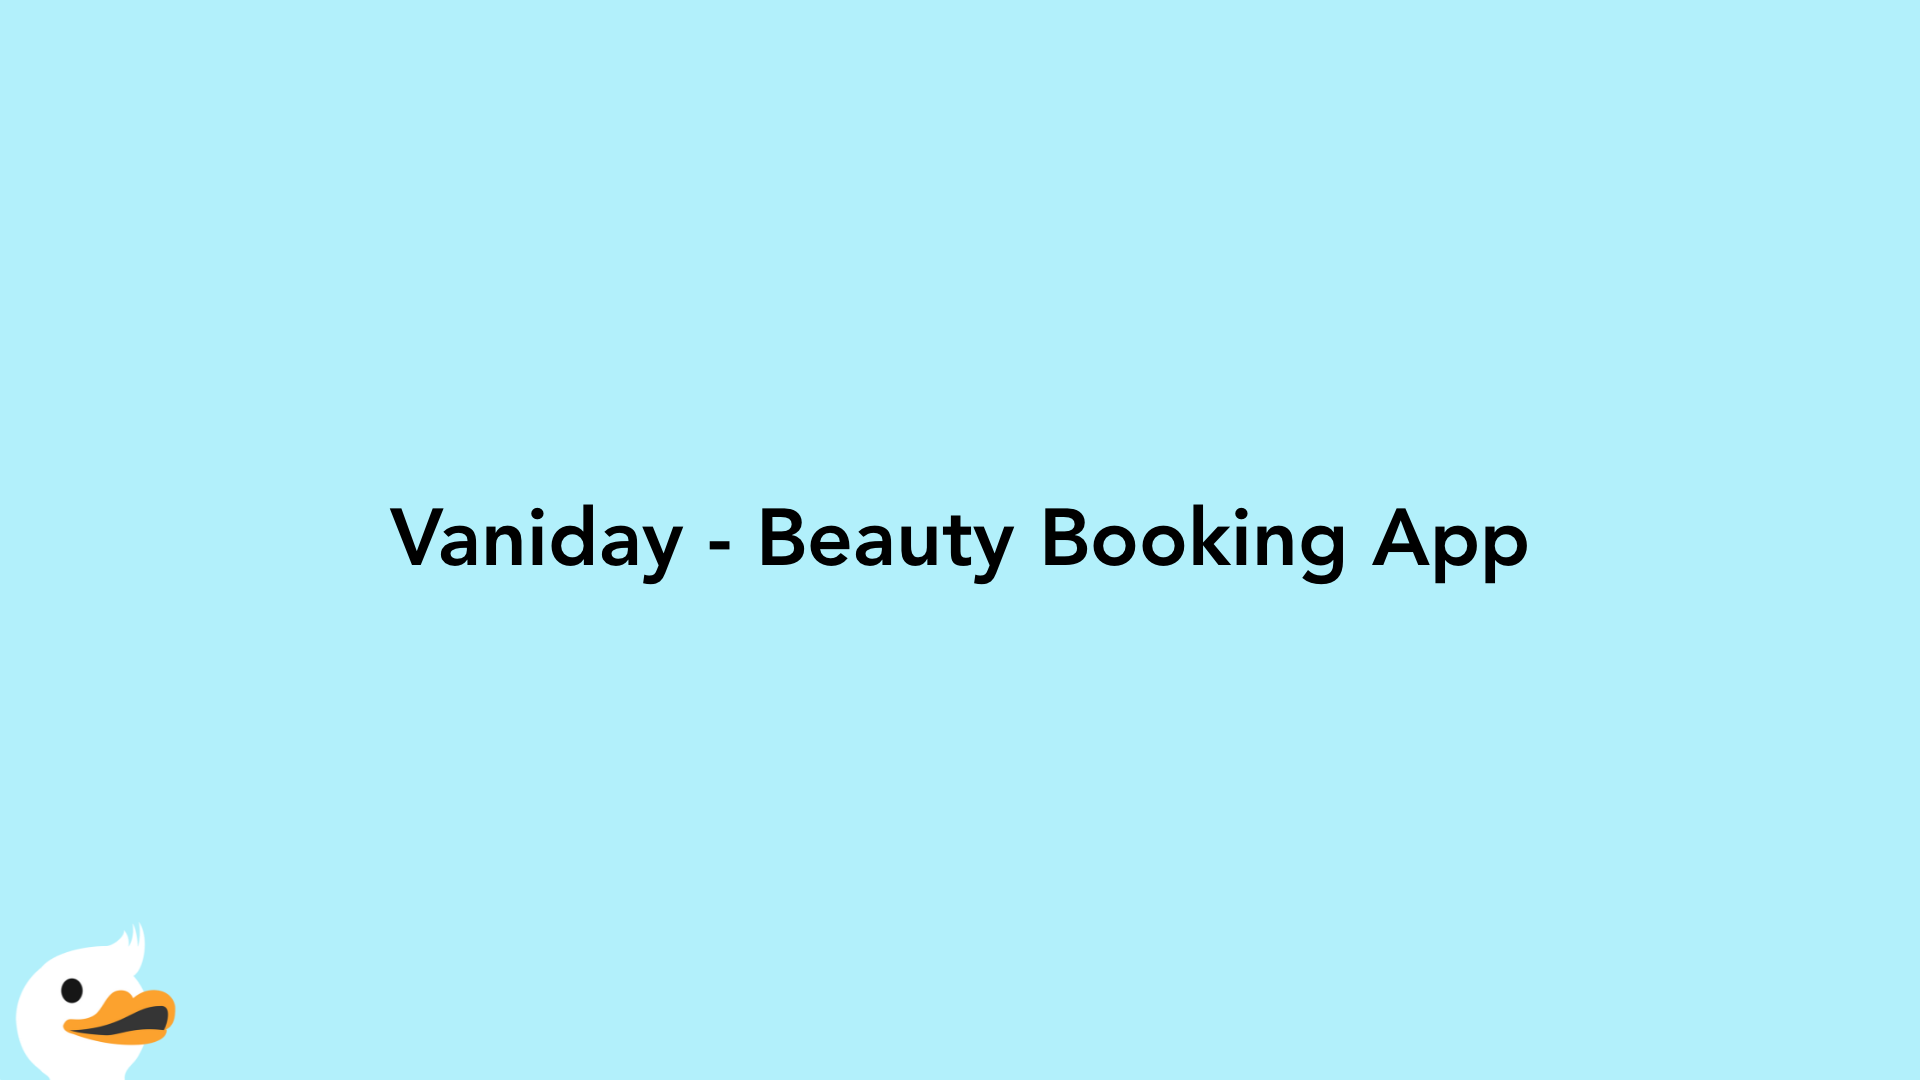 Vaniday - Beauty Booking App